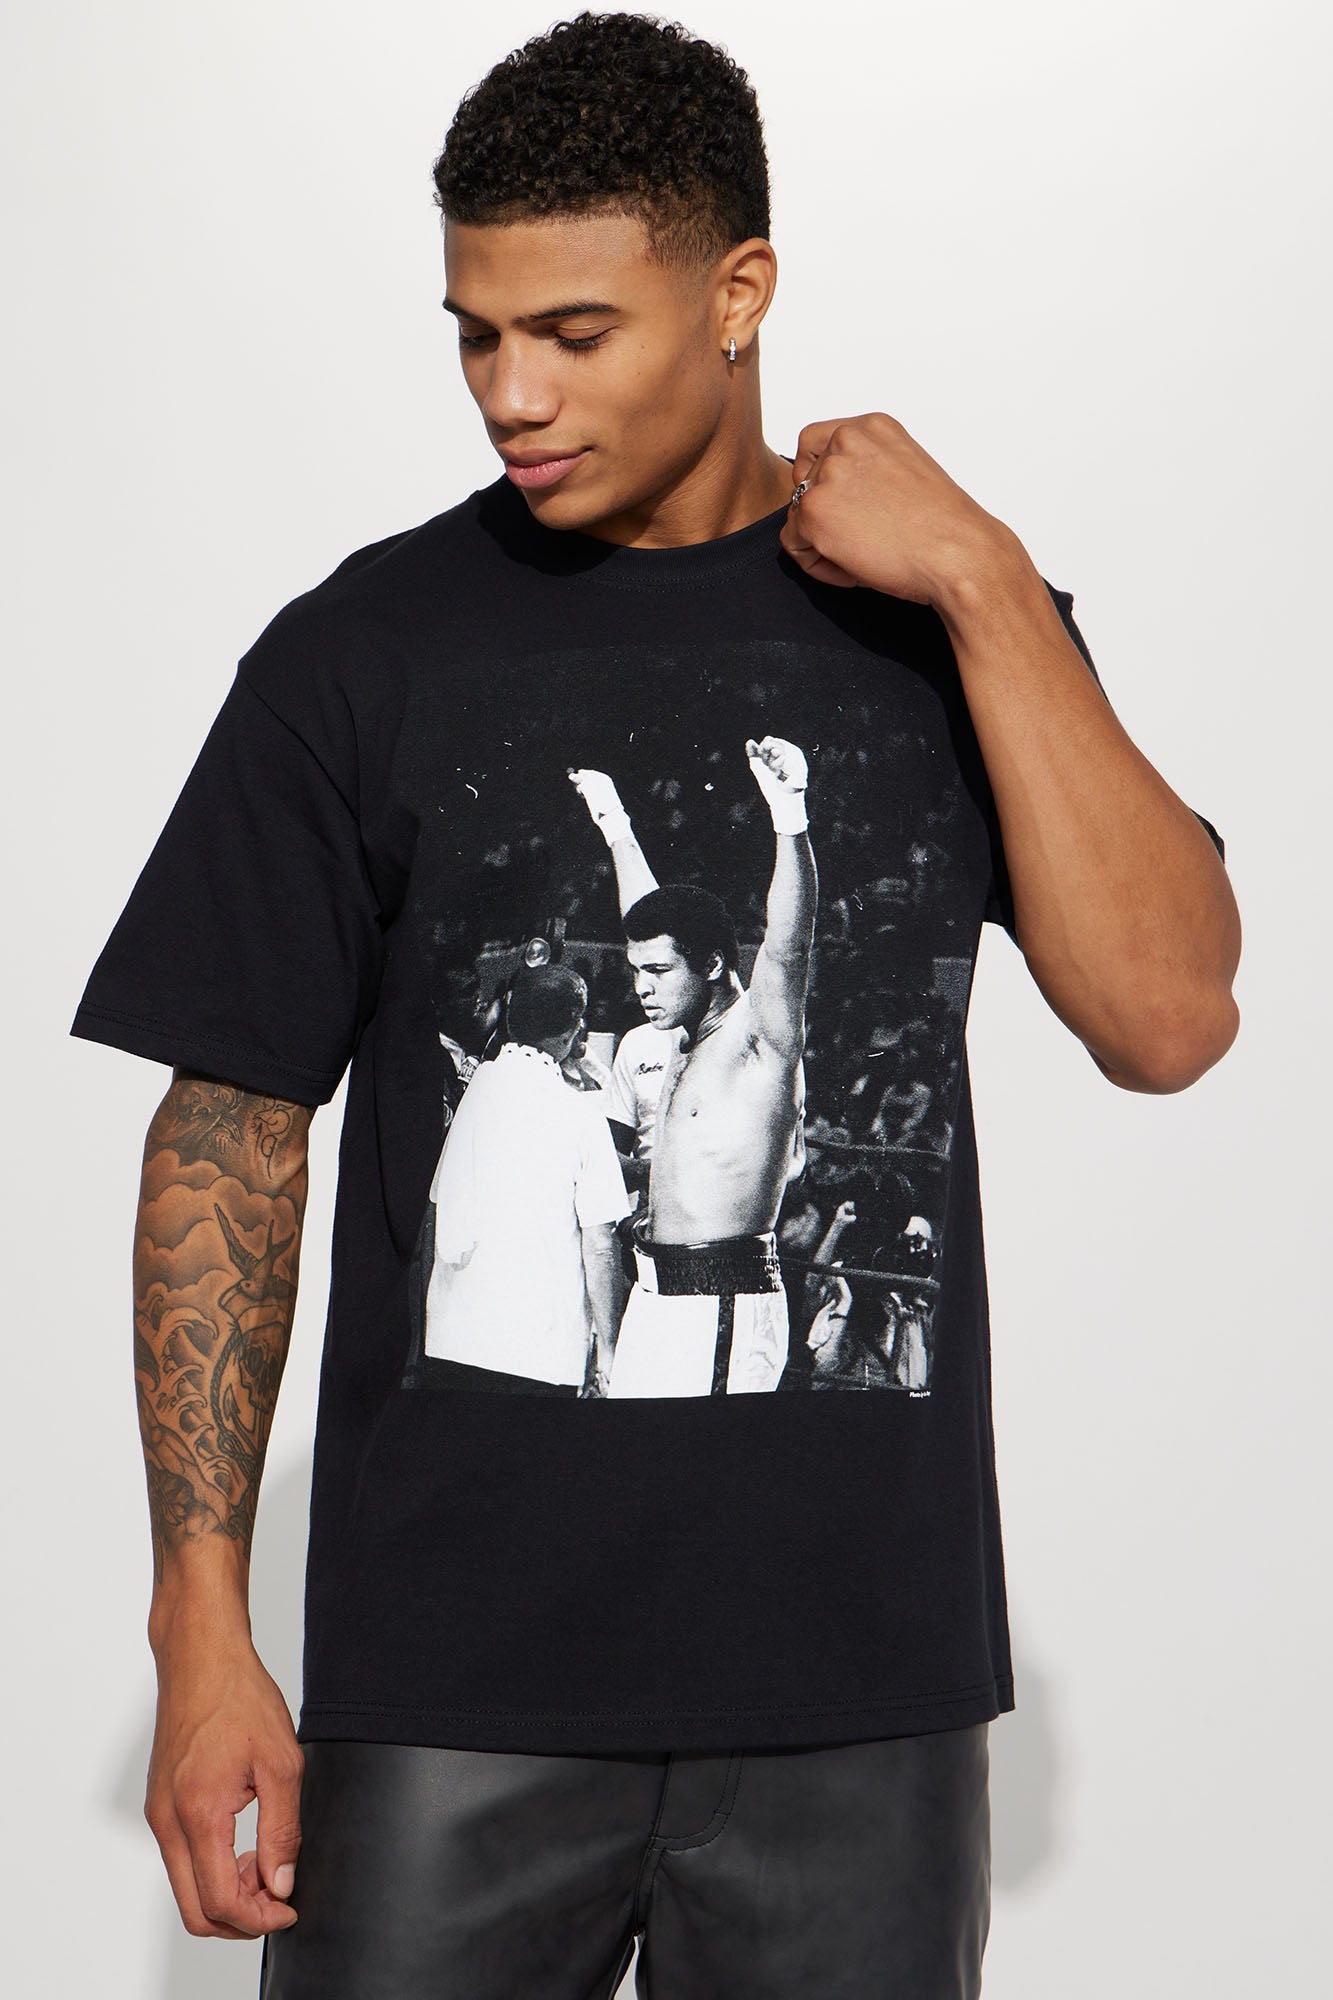 Muhammad Short Ali Fashion Victory Black Tee | Nova Mens Fashion Graphic Nova, Tees - Sleeve |